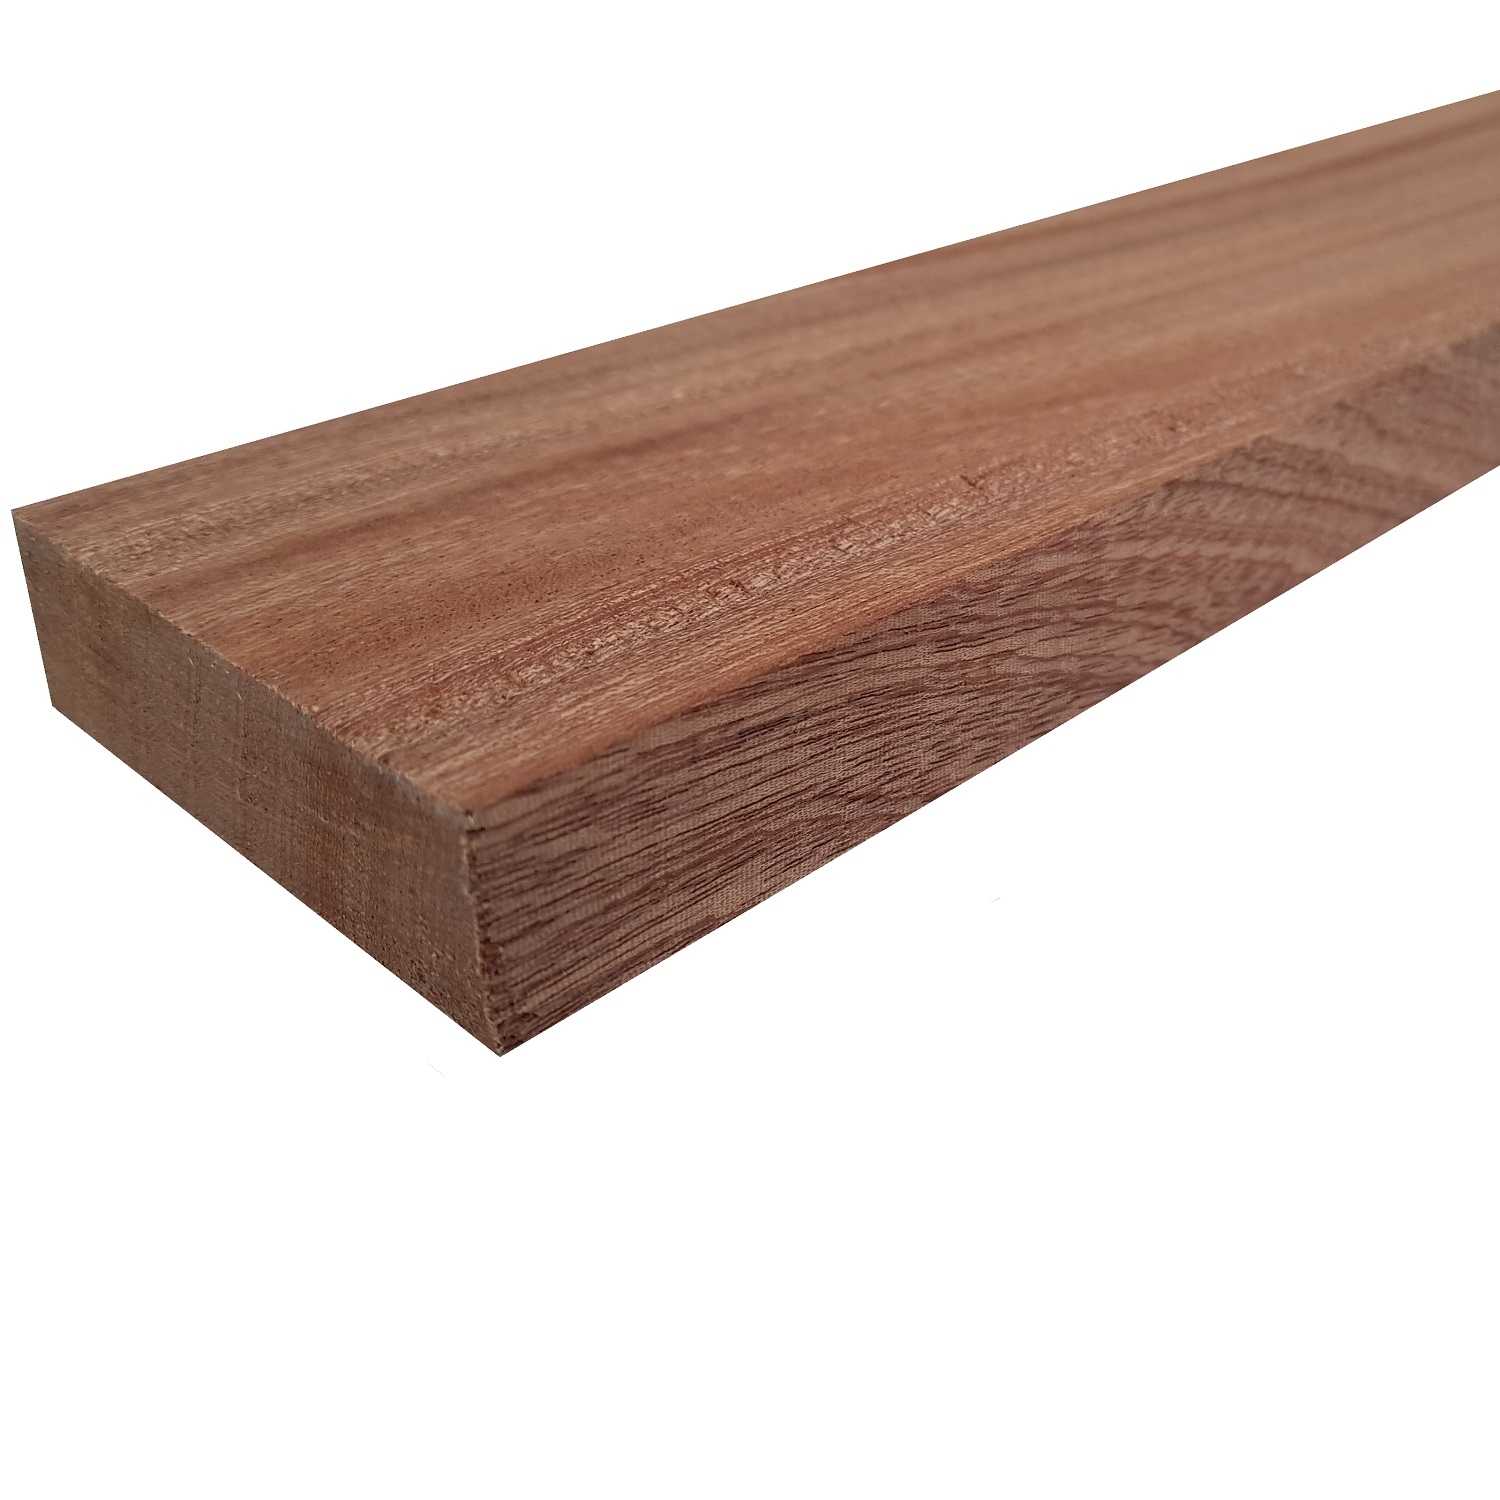 Tavola legno di Mogano Refilato Piallato mm 21 x 130 x 1500